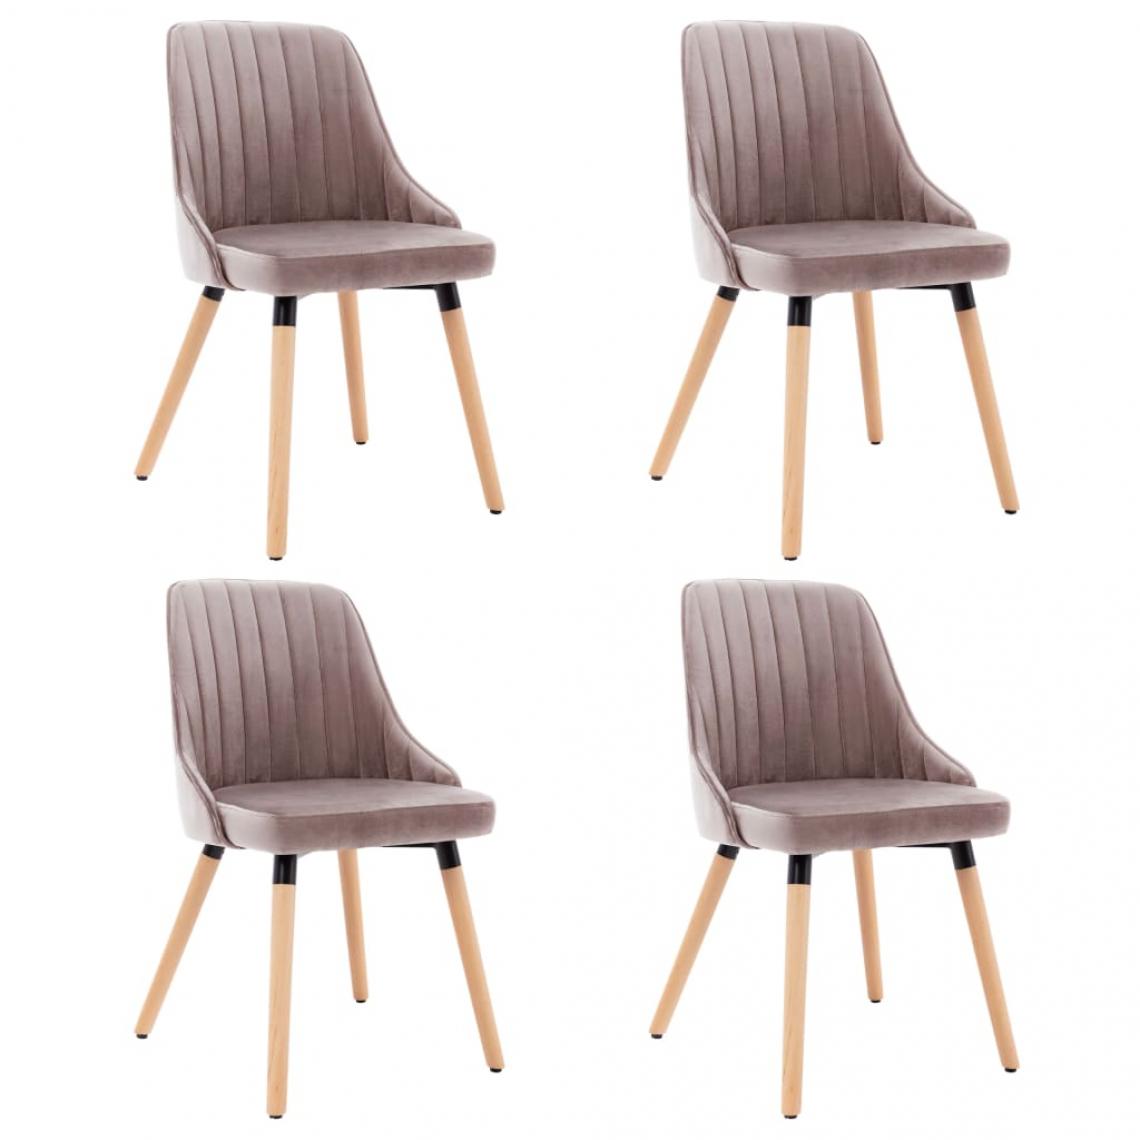 Decoshop26 - Lot de 4 chaises de salle à manger cuisine design moderne velours rose CDS021924 - Chaises